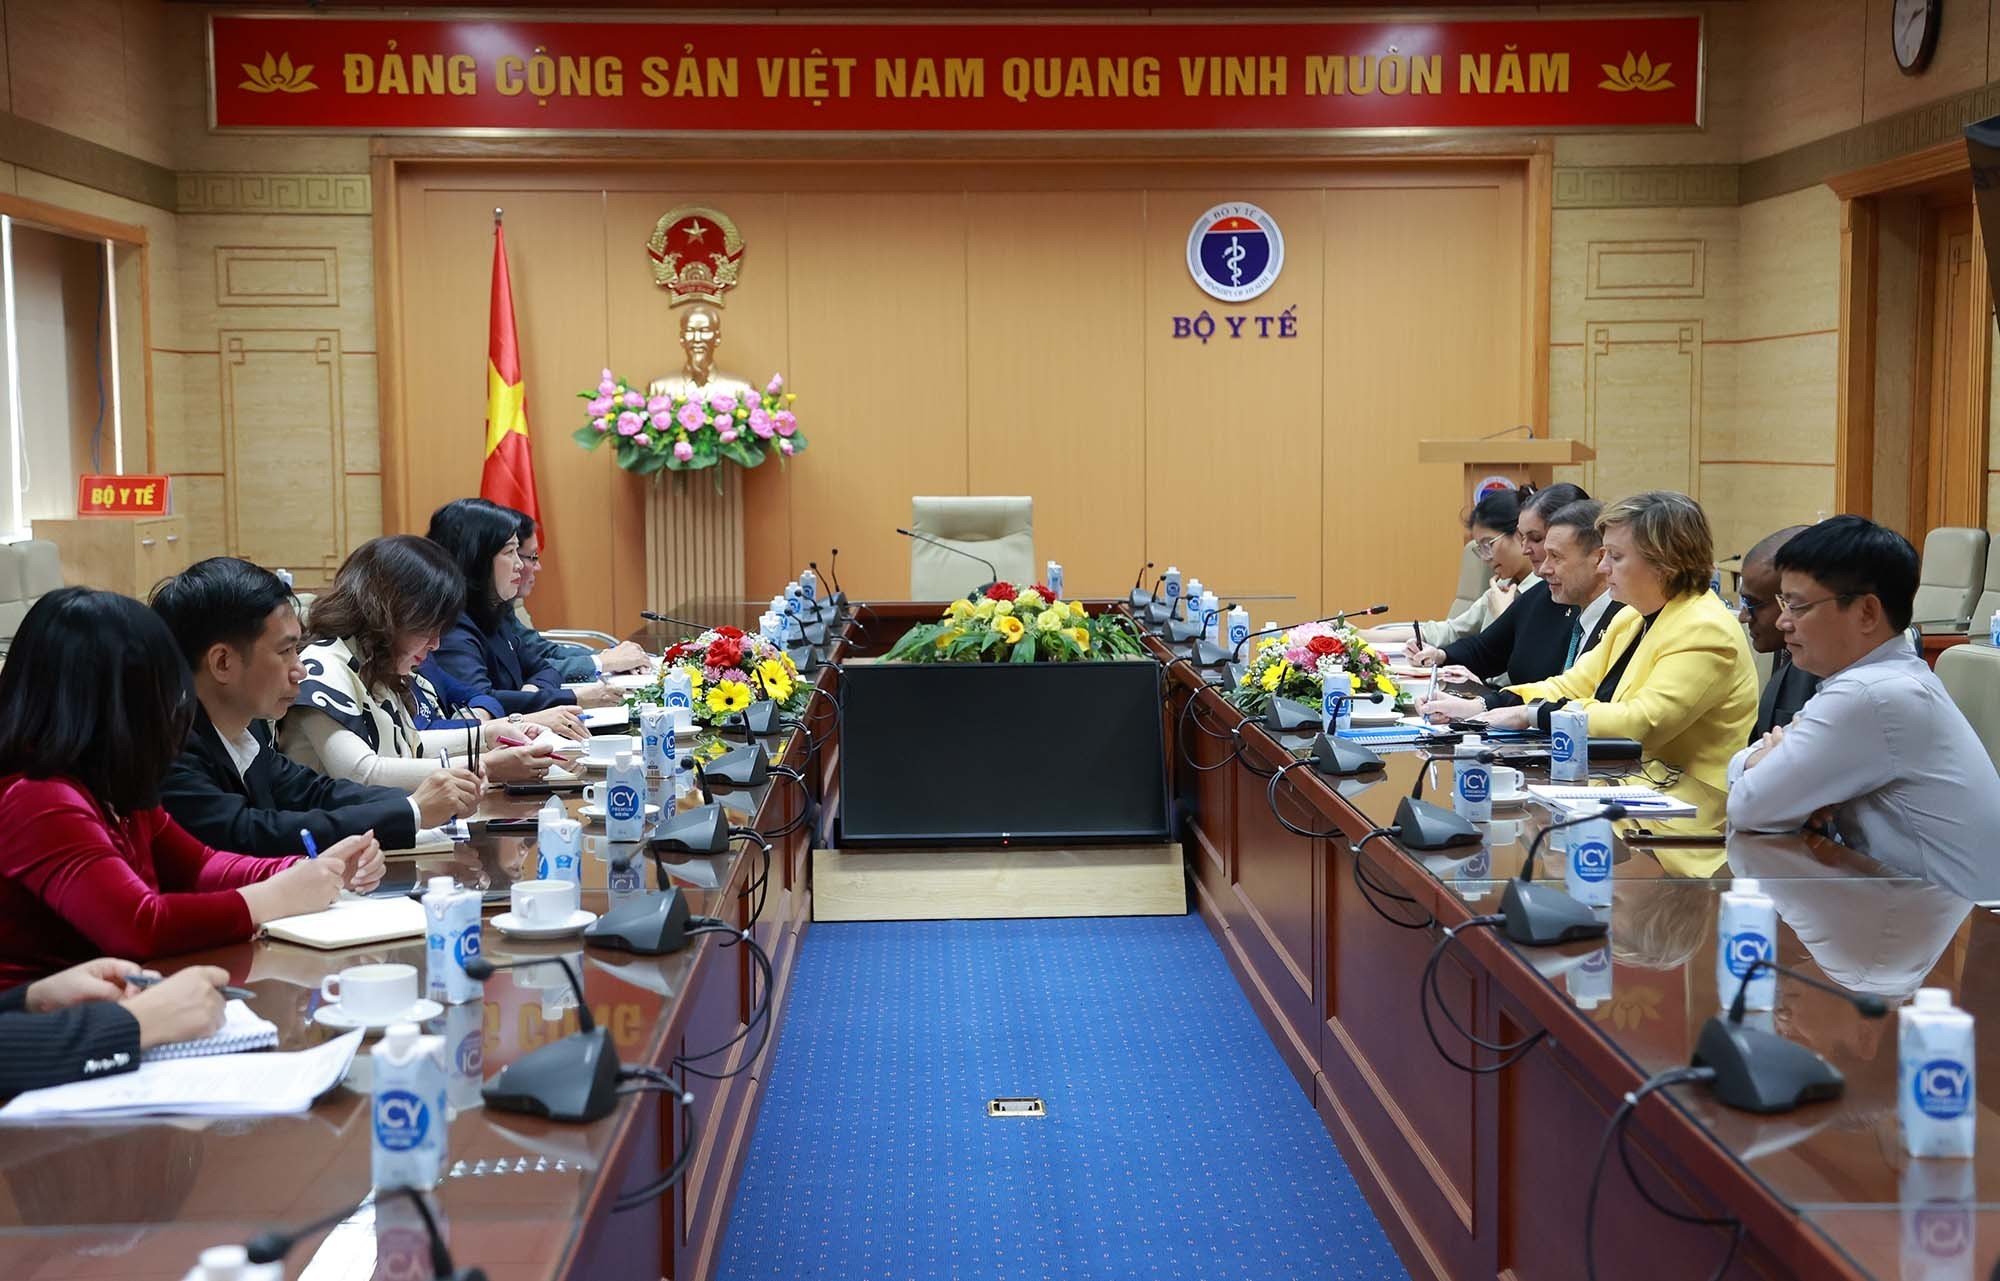 Chính phủ Úc hỗ trợ Việt Nam gần 500.000 liều vaccine 5 trong 1 để tiêm chủng mở rộng- Ảnh 1.